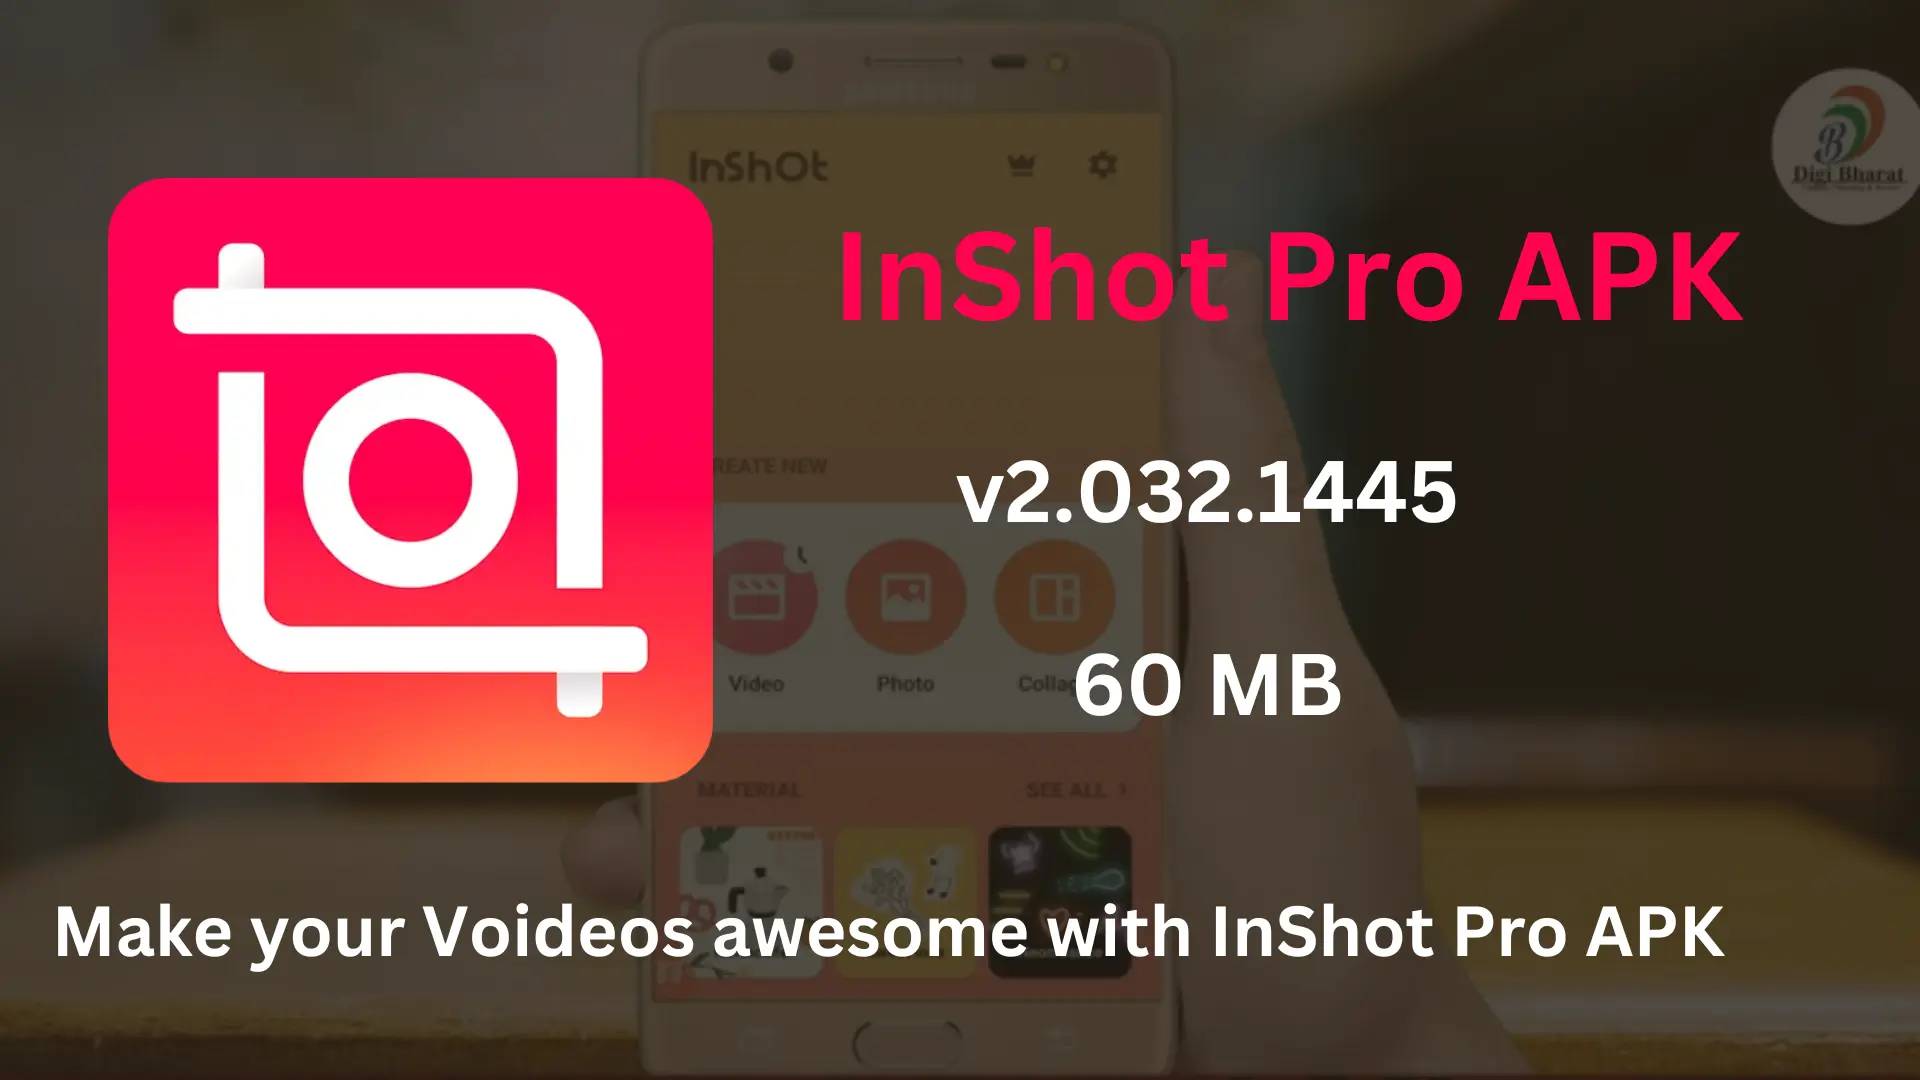 InShot Pro APK v2.032.1442